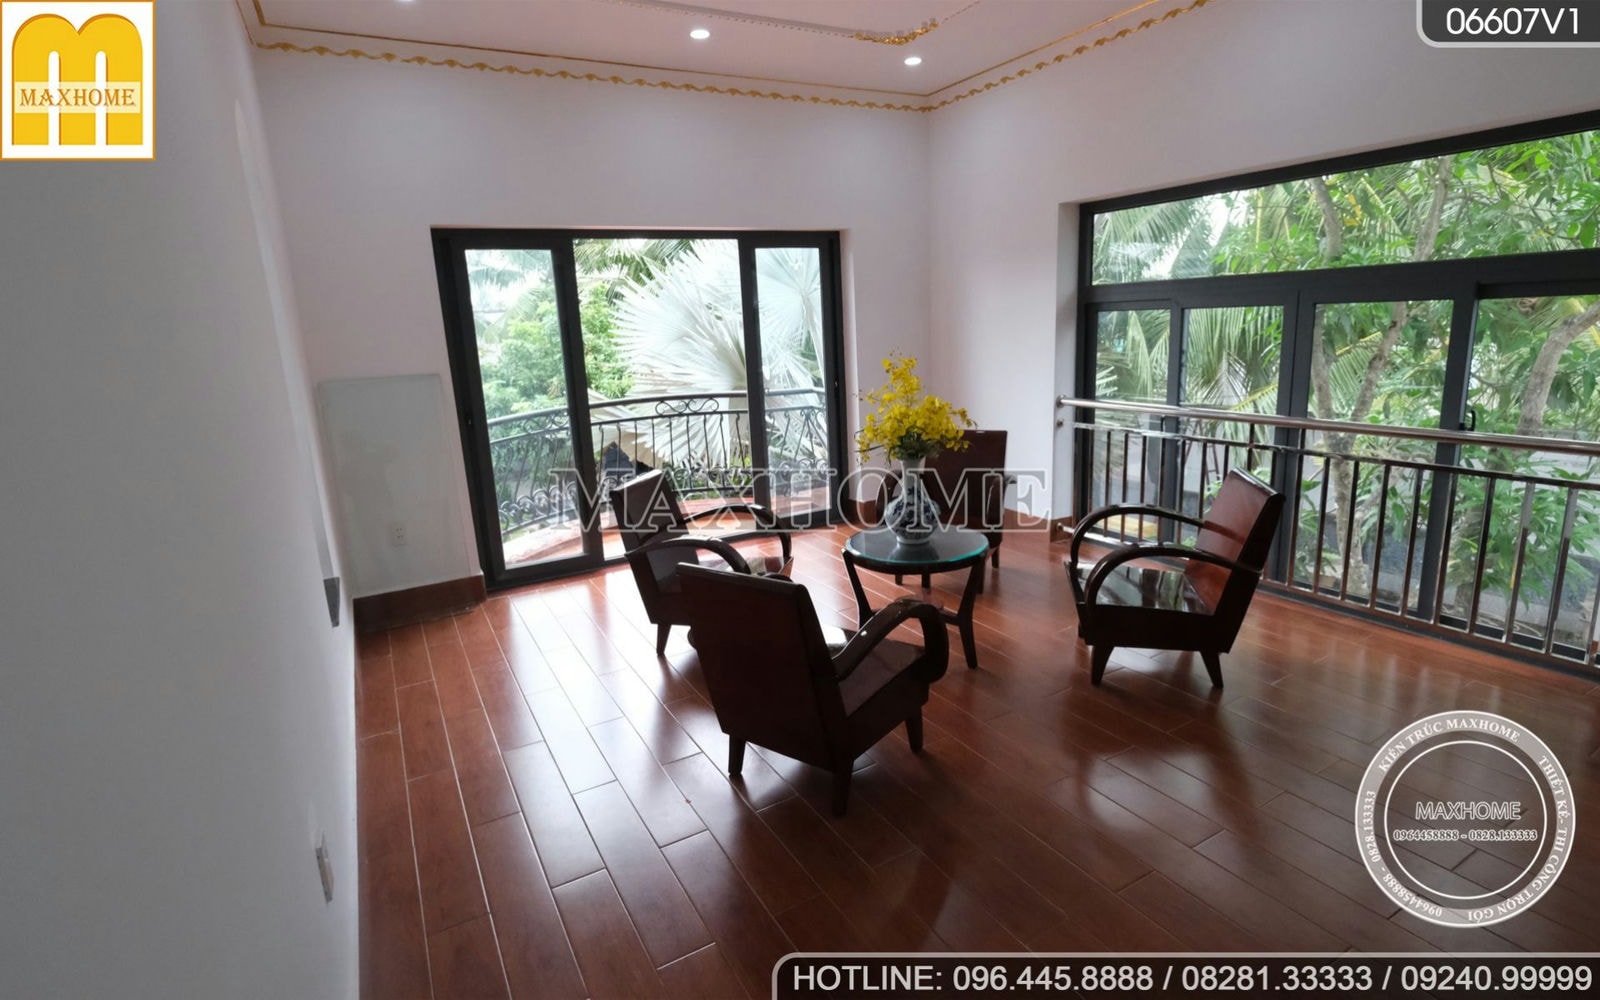 Trọn bộ nội thất sang trọng cho ngôi nhà vườn mái Thái tại Tiền Giang